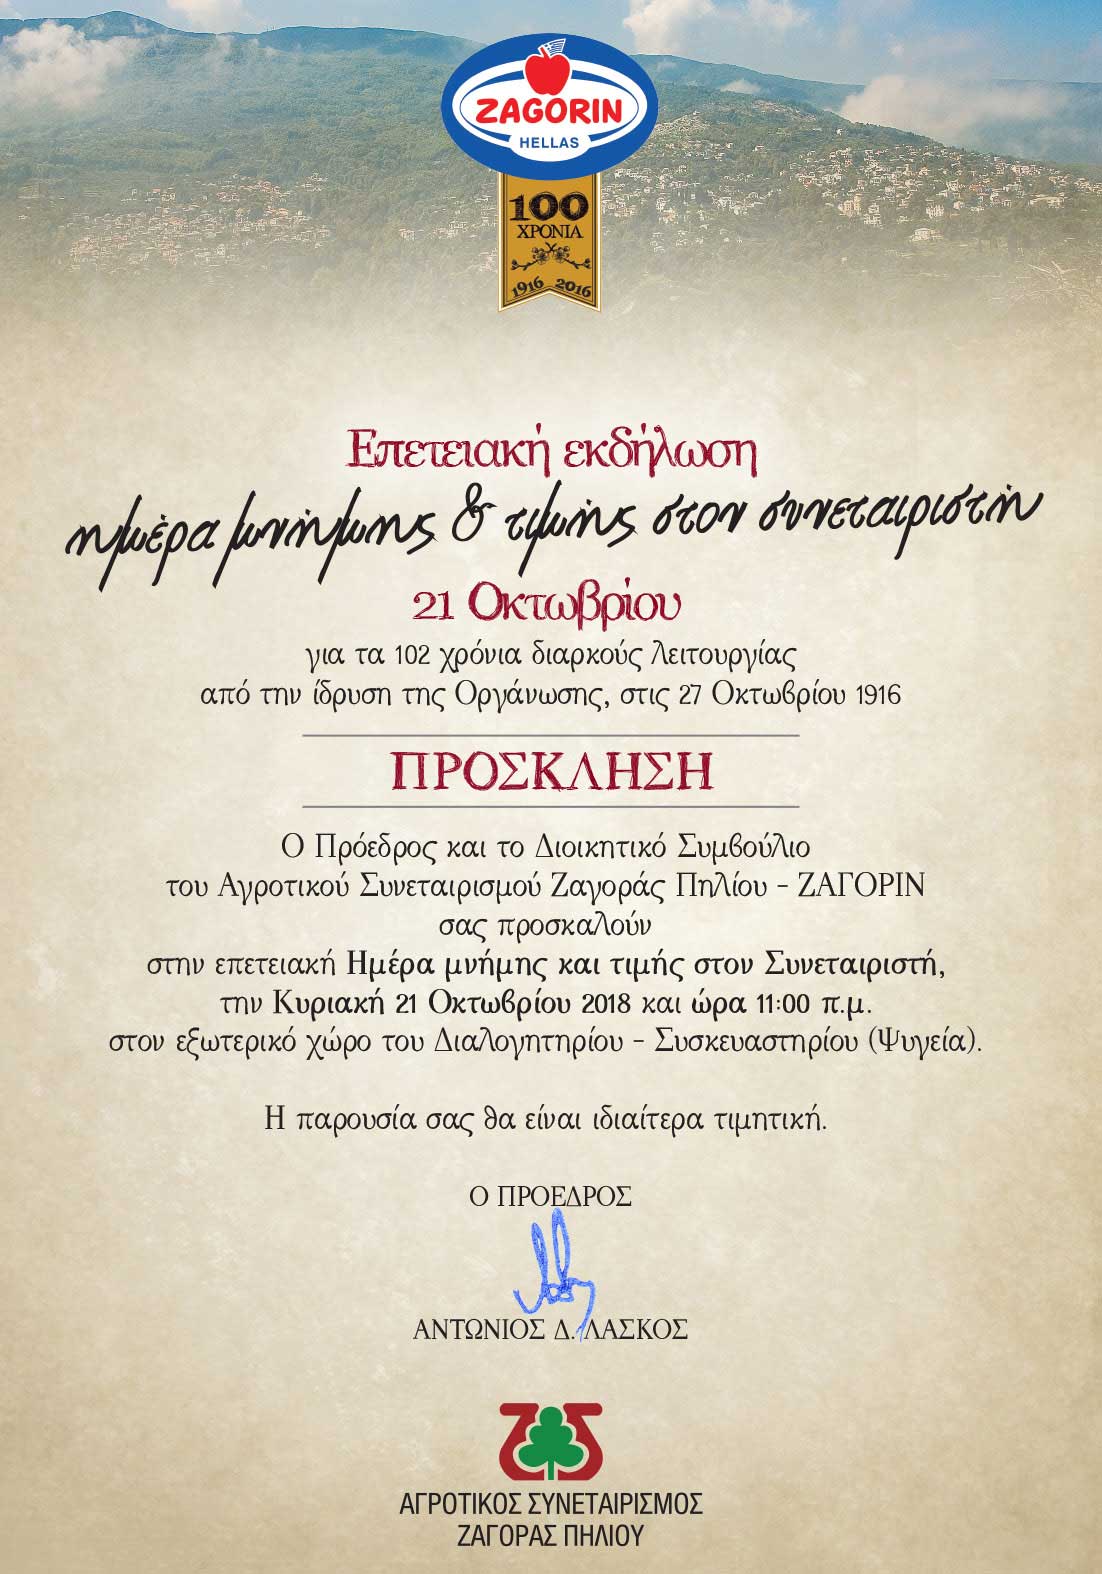 Προσκληση Επετειακή Εκδήλωση ημέρα μνήμης και τιμής στον συνεταιριστή Ζαγορίν